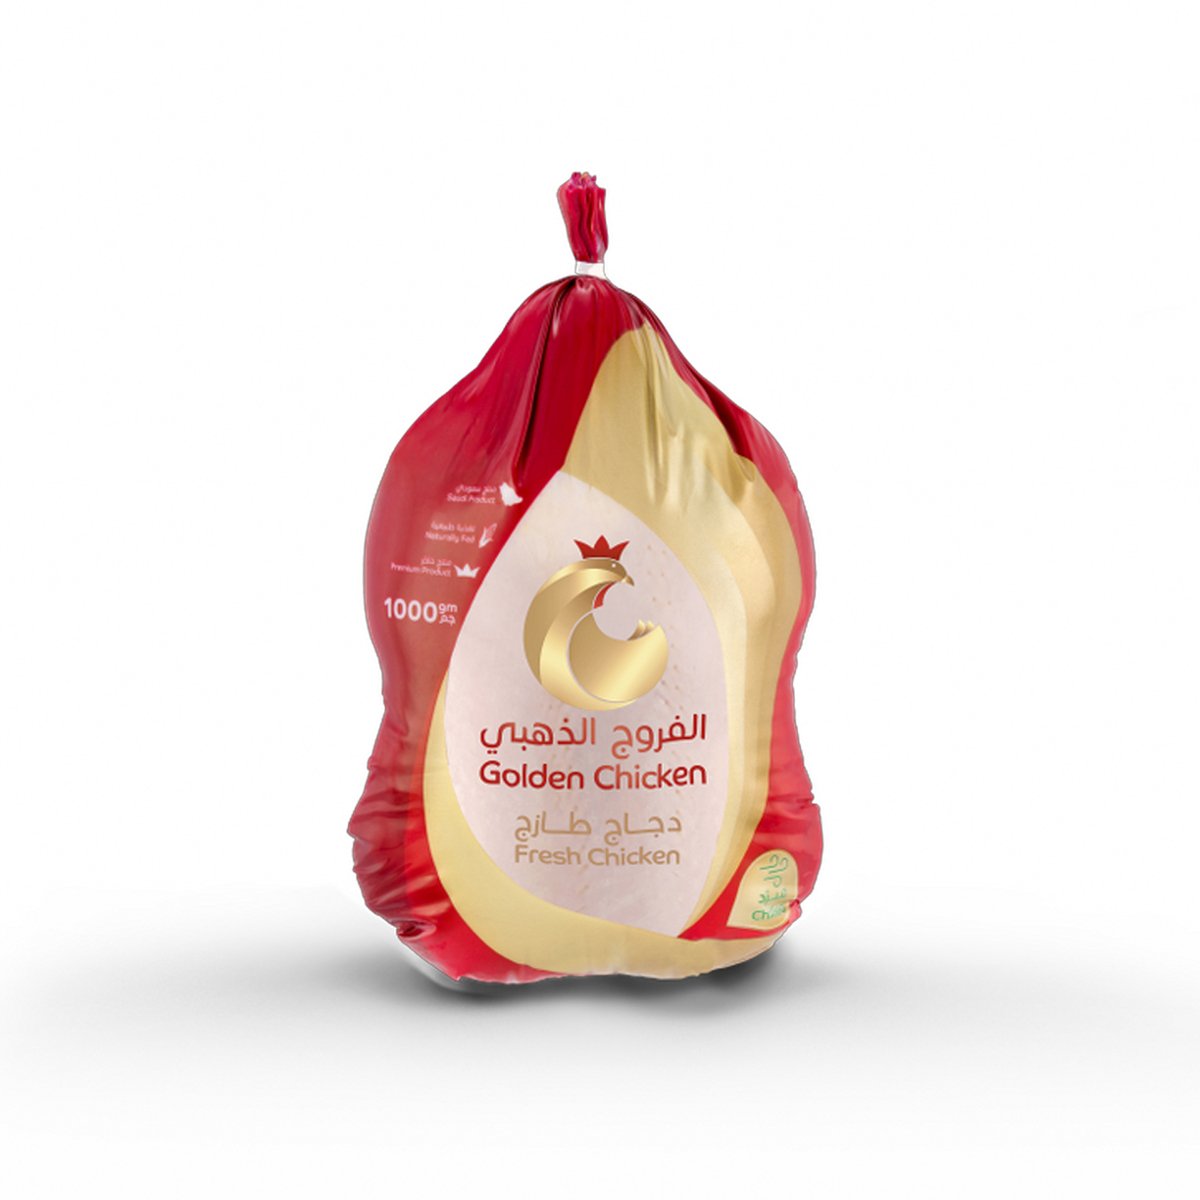 اشتري قم بشراء الفروج الذهبي دجاجة كاملة طازجة 1 كجم Online at Best Price من الموقع - من لولو هايبر ماركت Fresh Poultry في السعودية